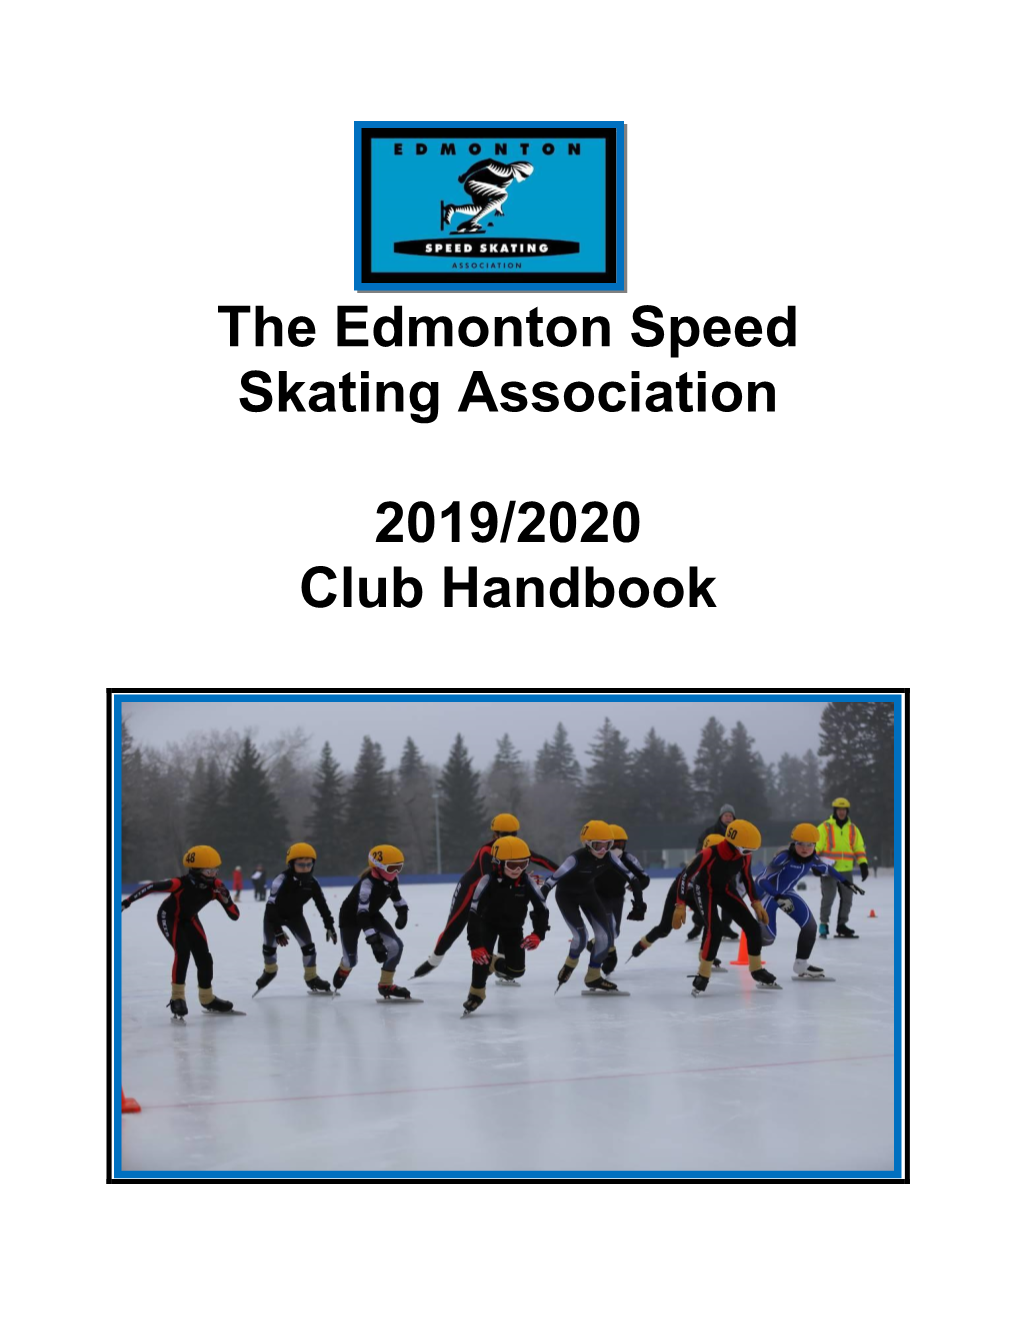 Club-Handbook-2019-2020.Pdf